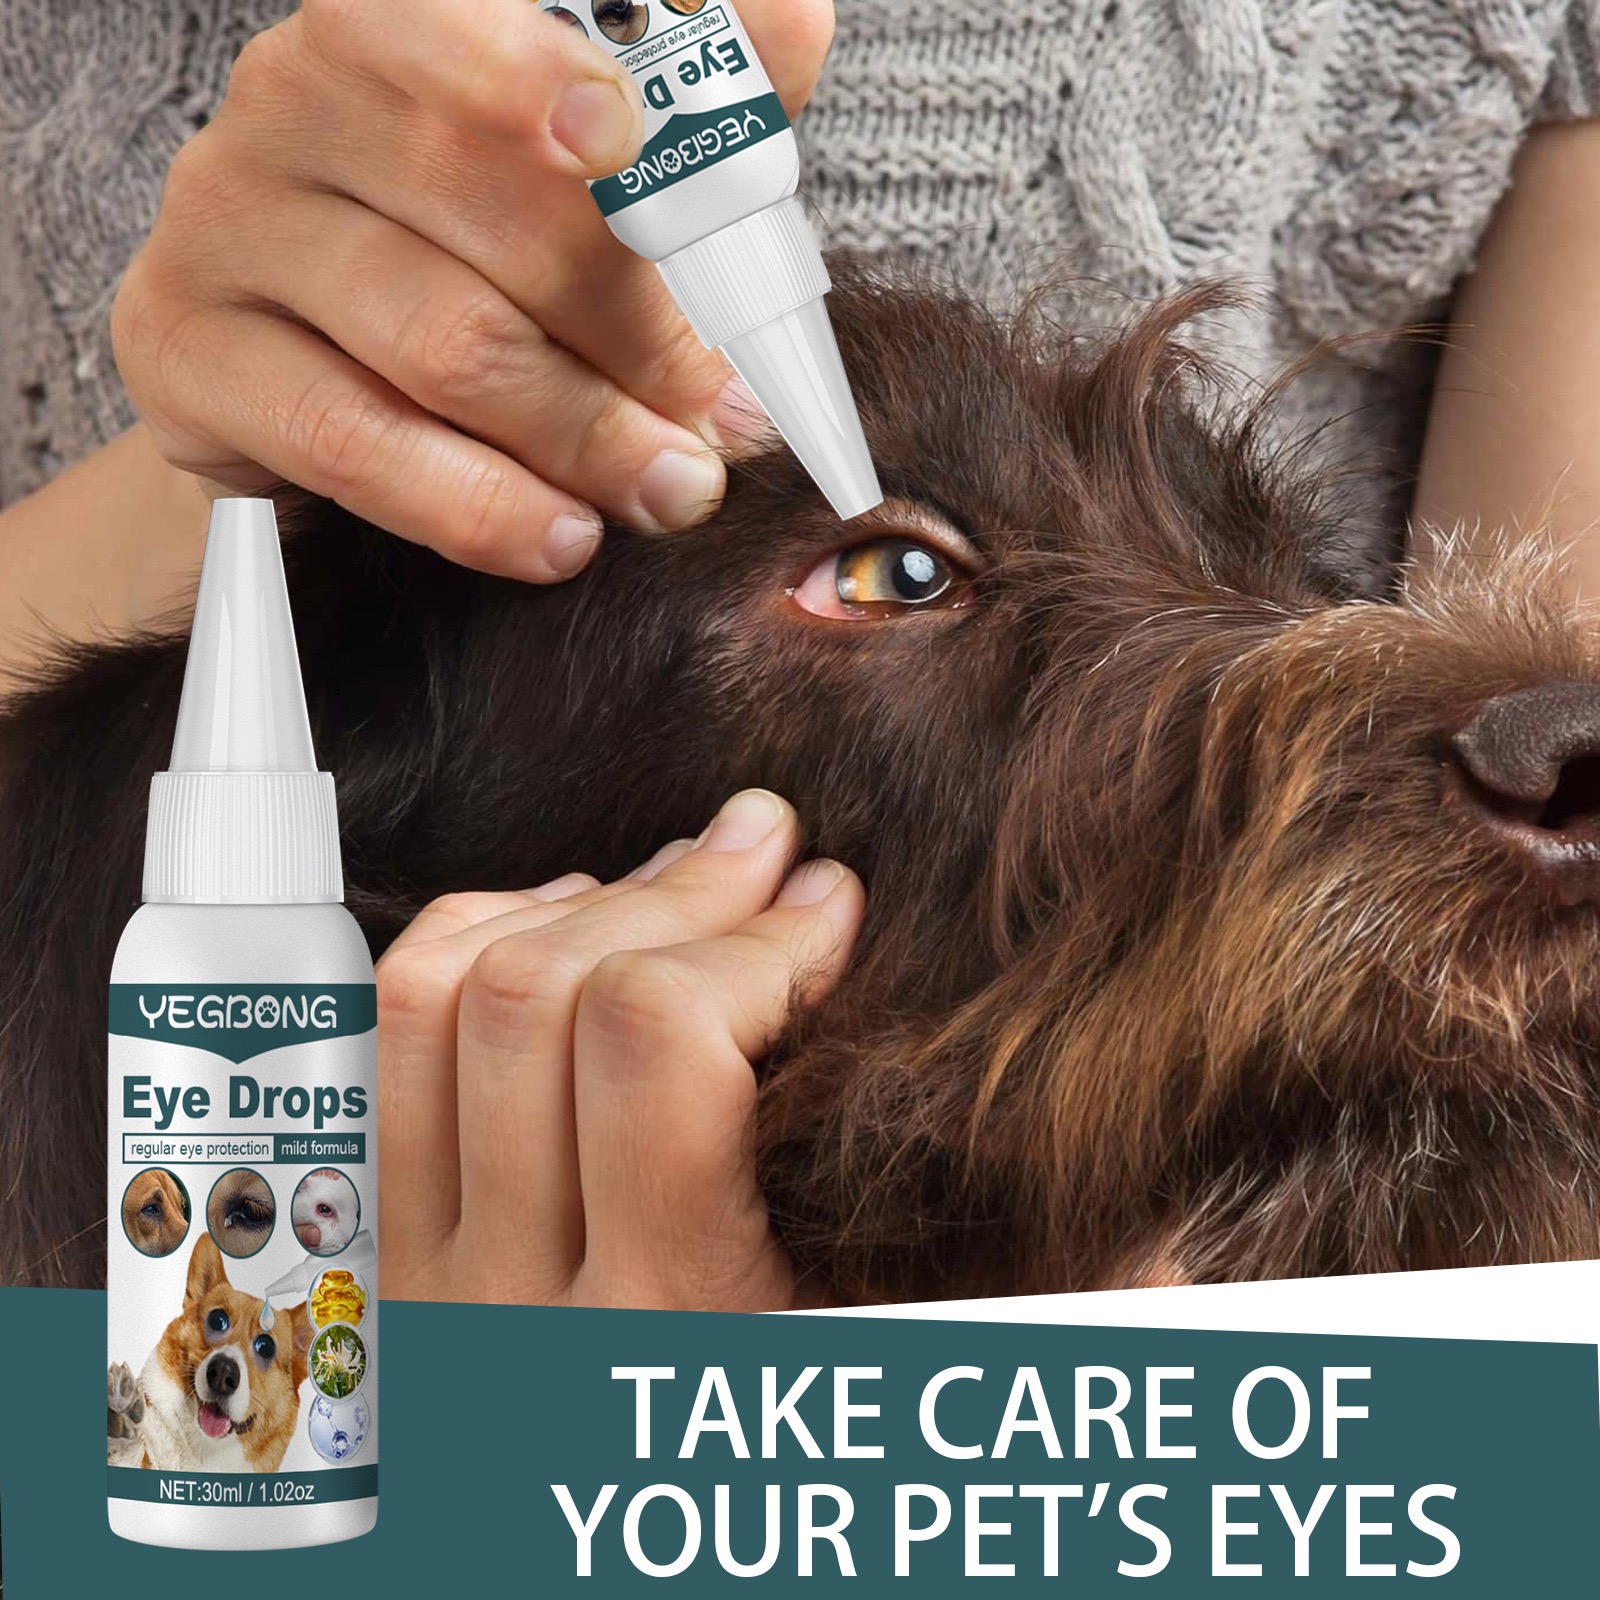 ตา หยดเดียวสะอาดทันที ยาหยอดแมว ยาหยอดสุนัข น้ำยาเช็ดคราบน้ำแมว น้ำยาเช็ดคราบน้ำสุนัข ยาหยอดสุนัขอักเสบ